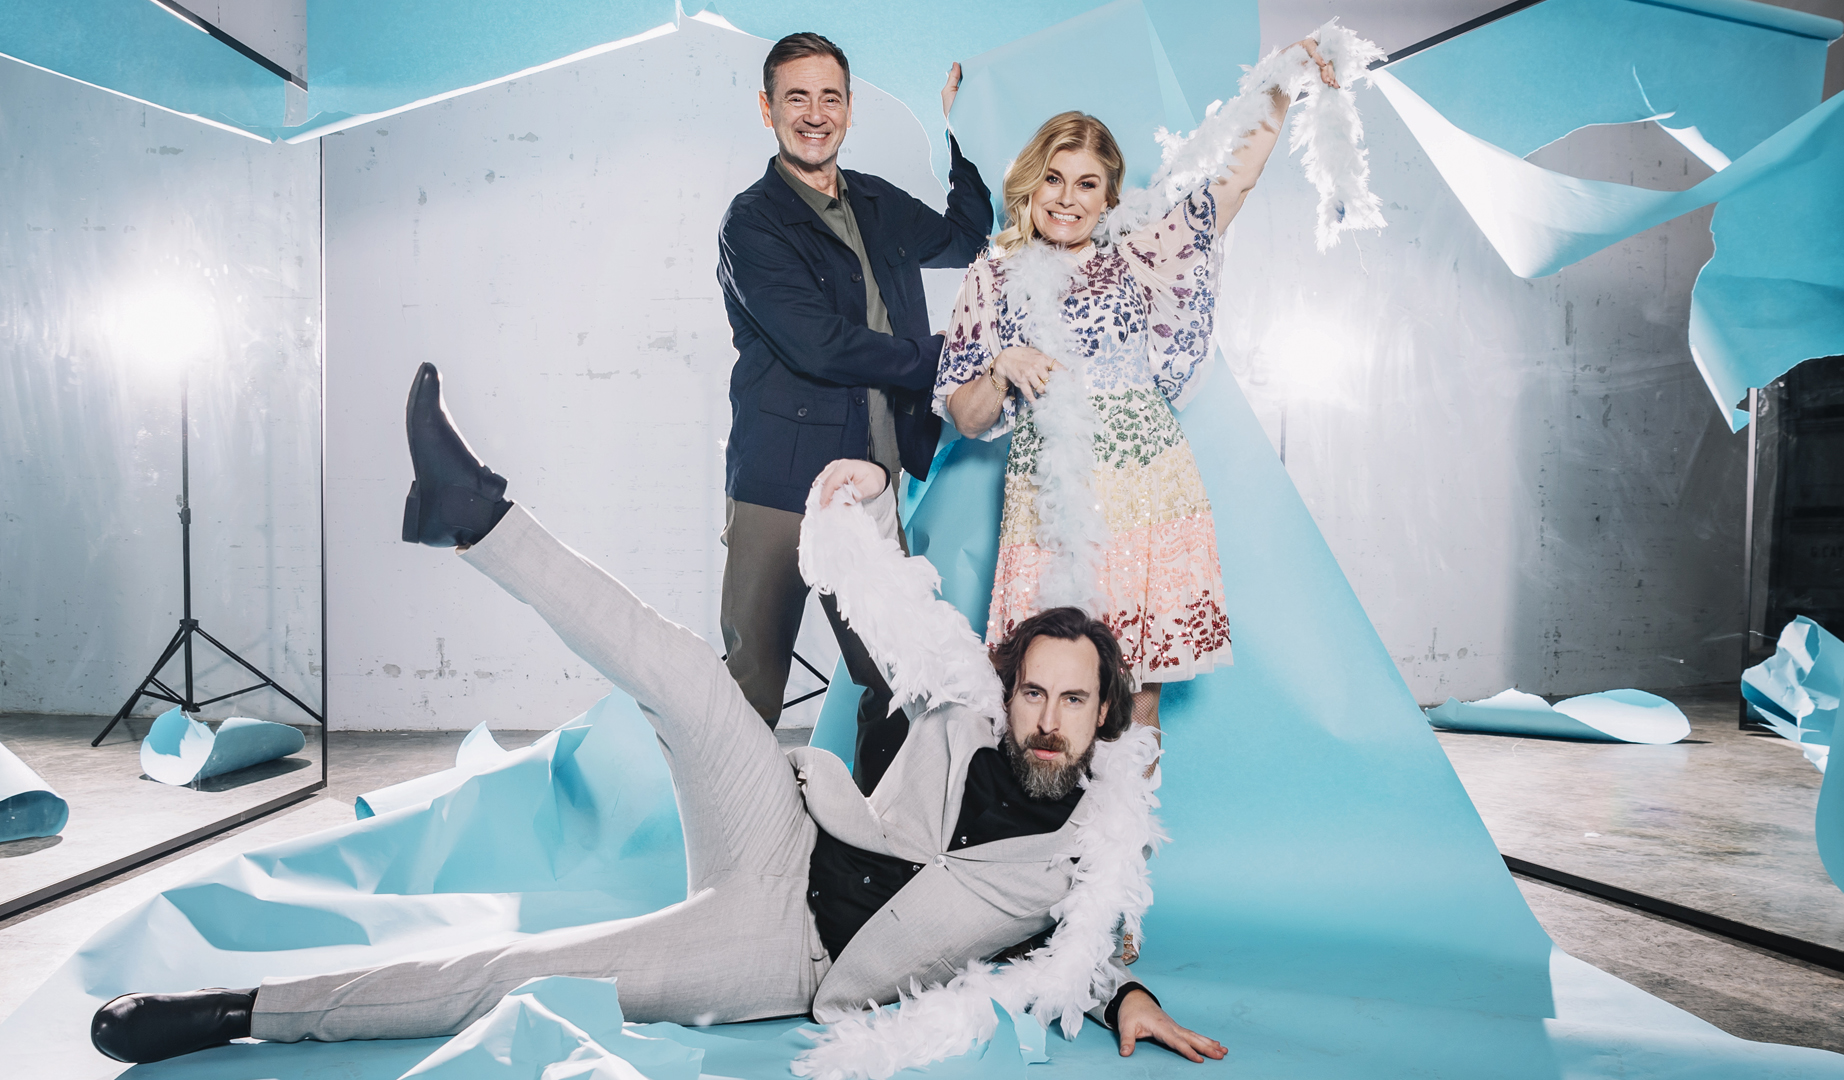 Audiencias Sociales: la cuarta semifinal del Melodifestivalen 2021 ha tenido un impacto de 5’3M de usuarios